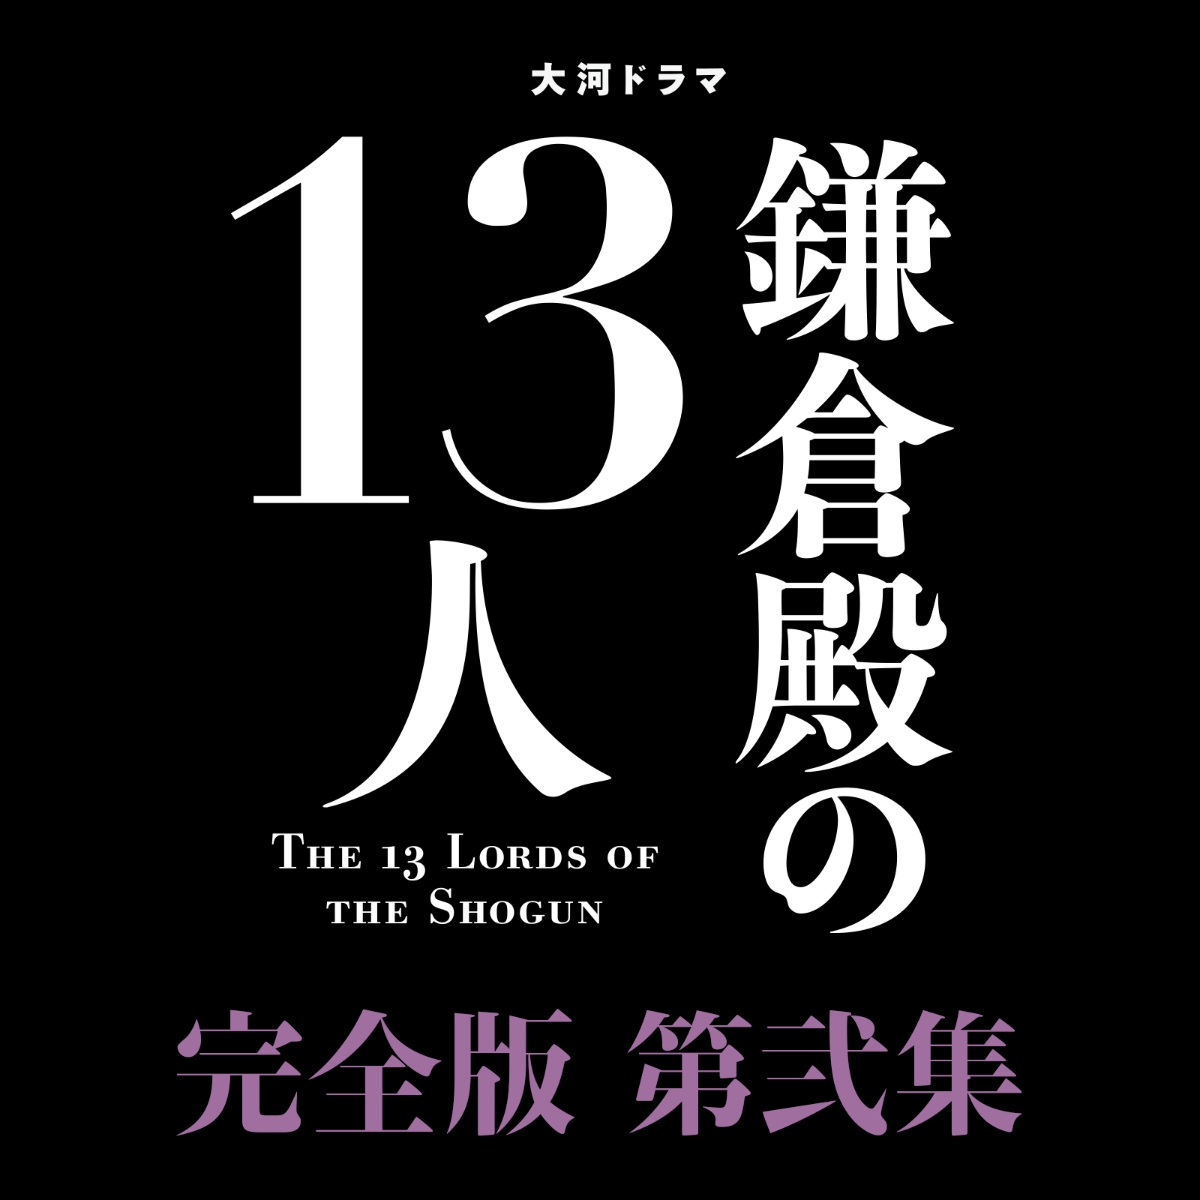 楽天ブックス: 大河ドラマ 鎌倉殿の13人 完全版 第弐集 DVD BOX - 小栗 